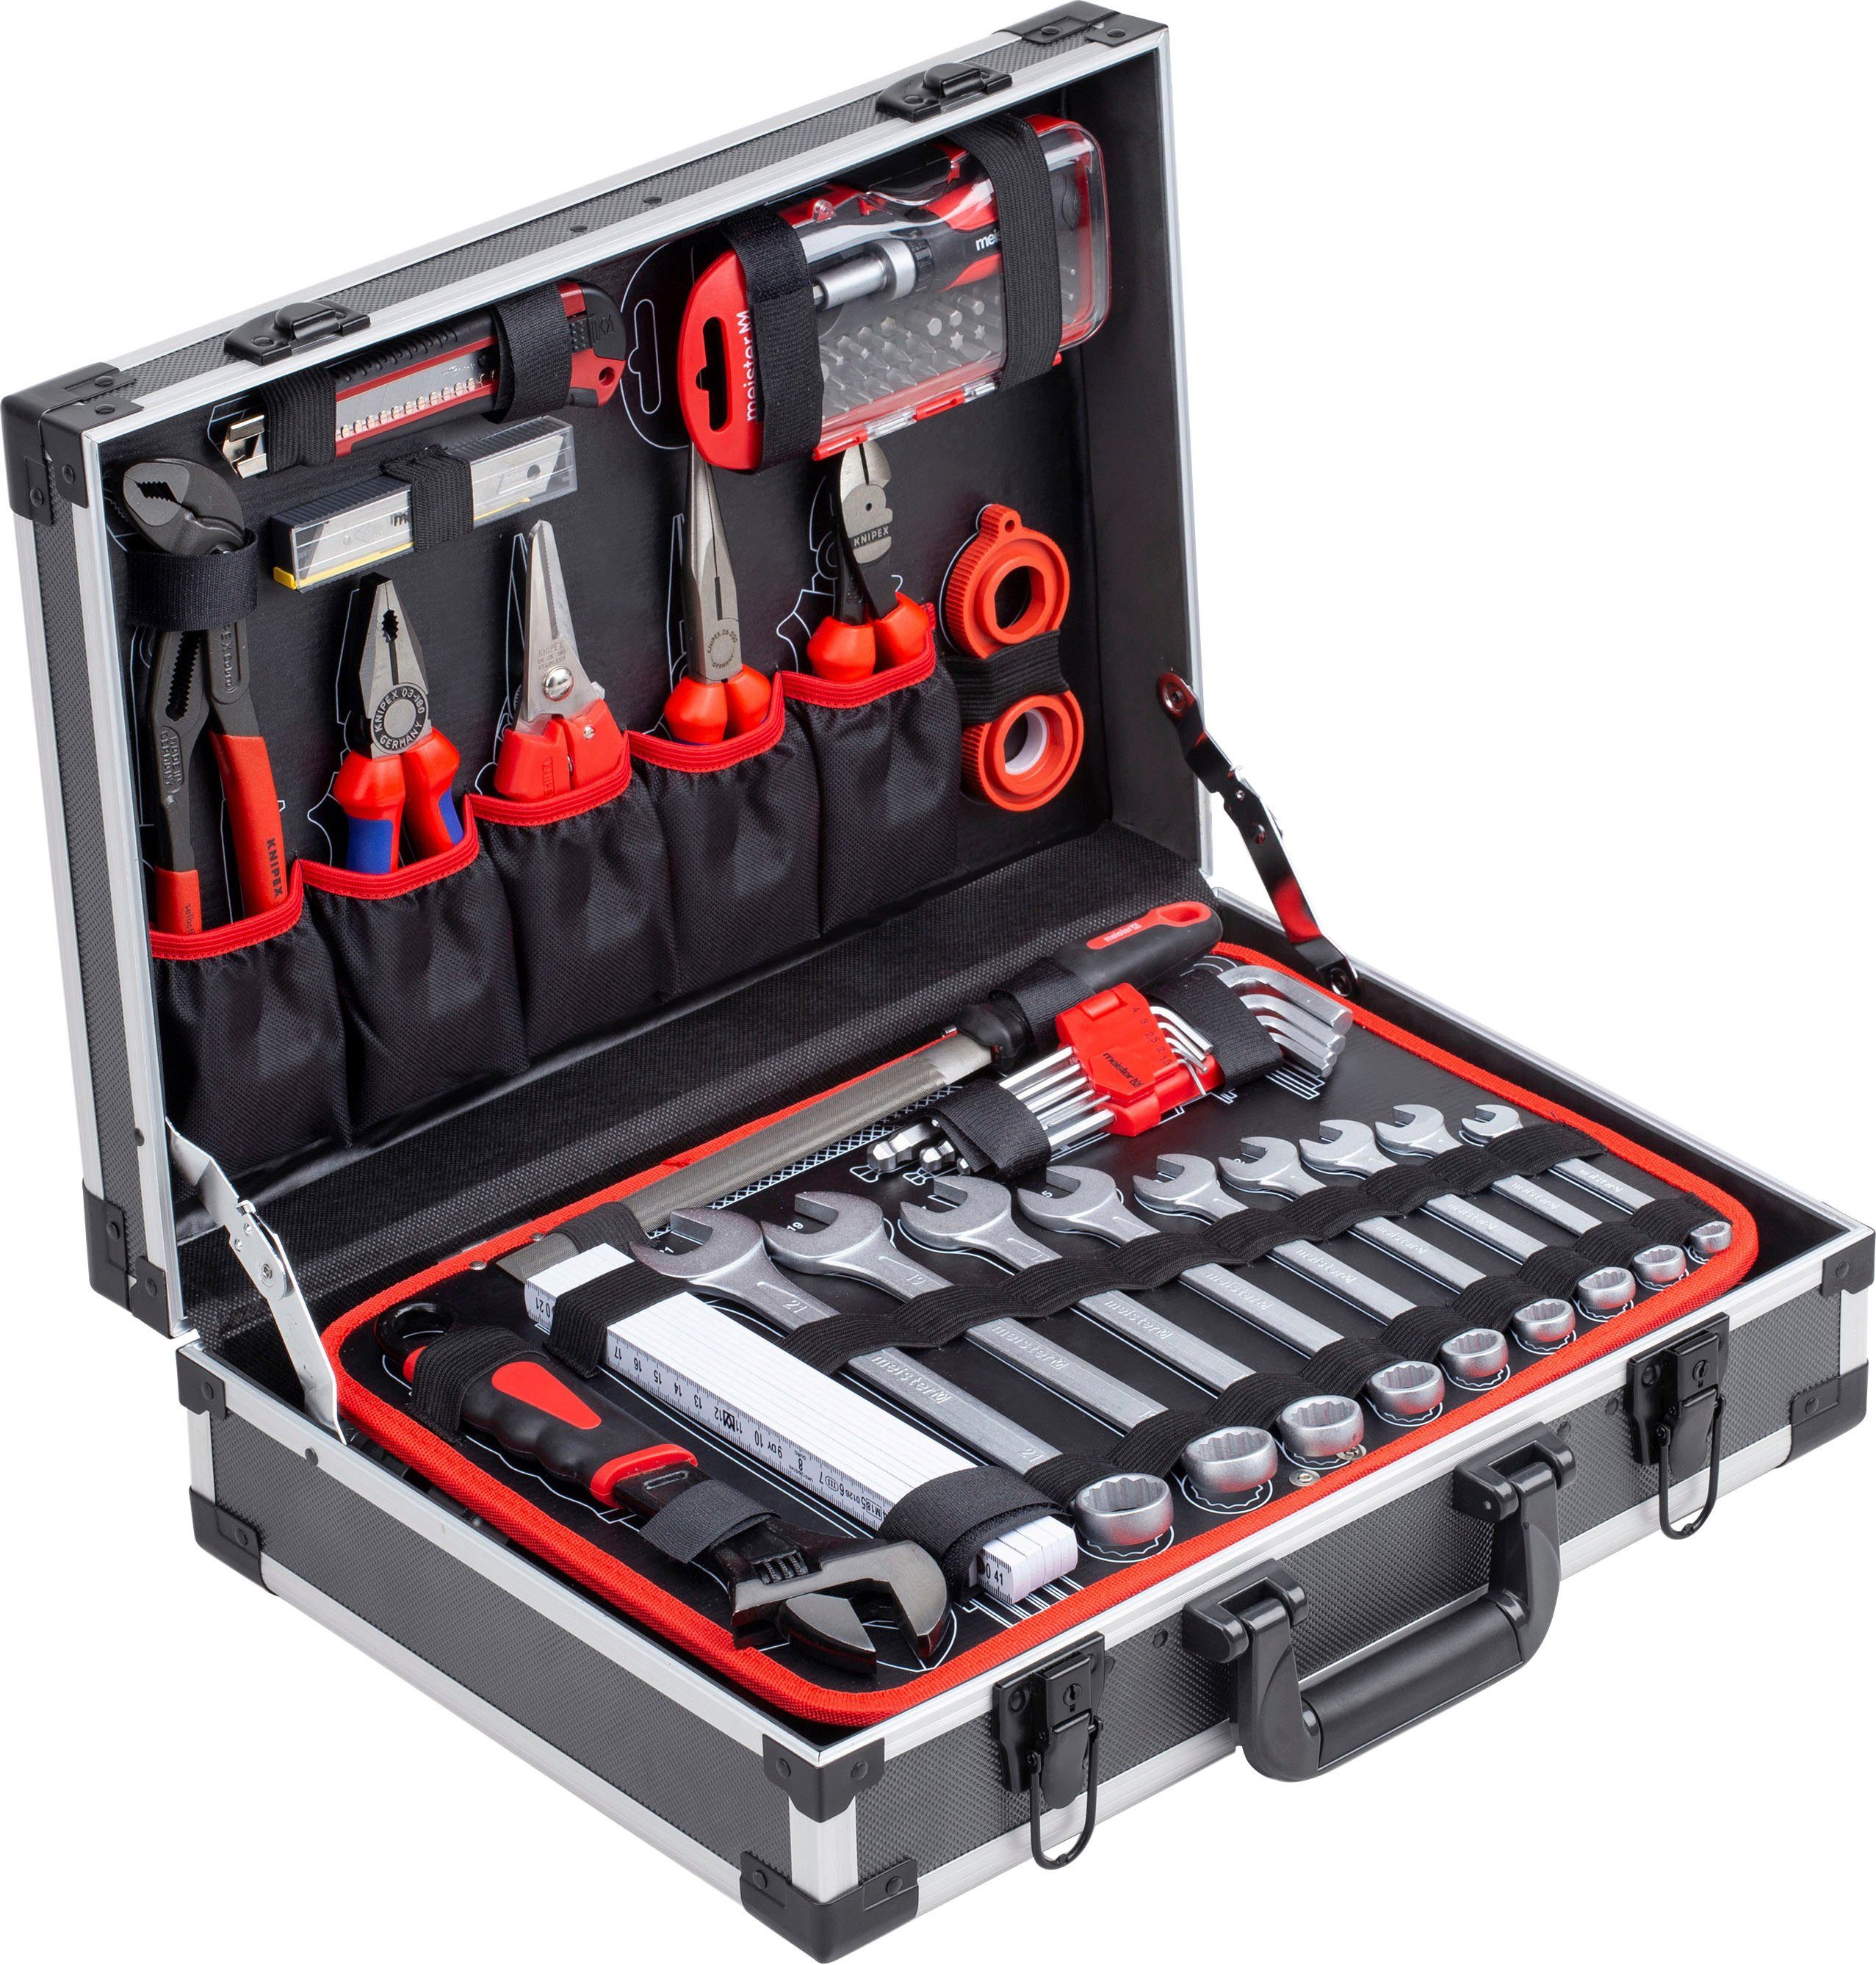 Alu-Koffer 8973750, von Wera, Werkzeugkoffer Knipex Qualitätswerkzeug & Profi / 131-teilig, mit Werkzeugset meister